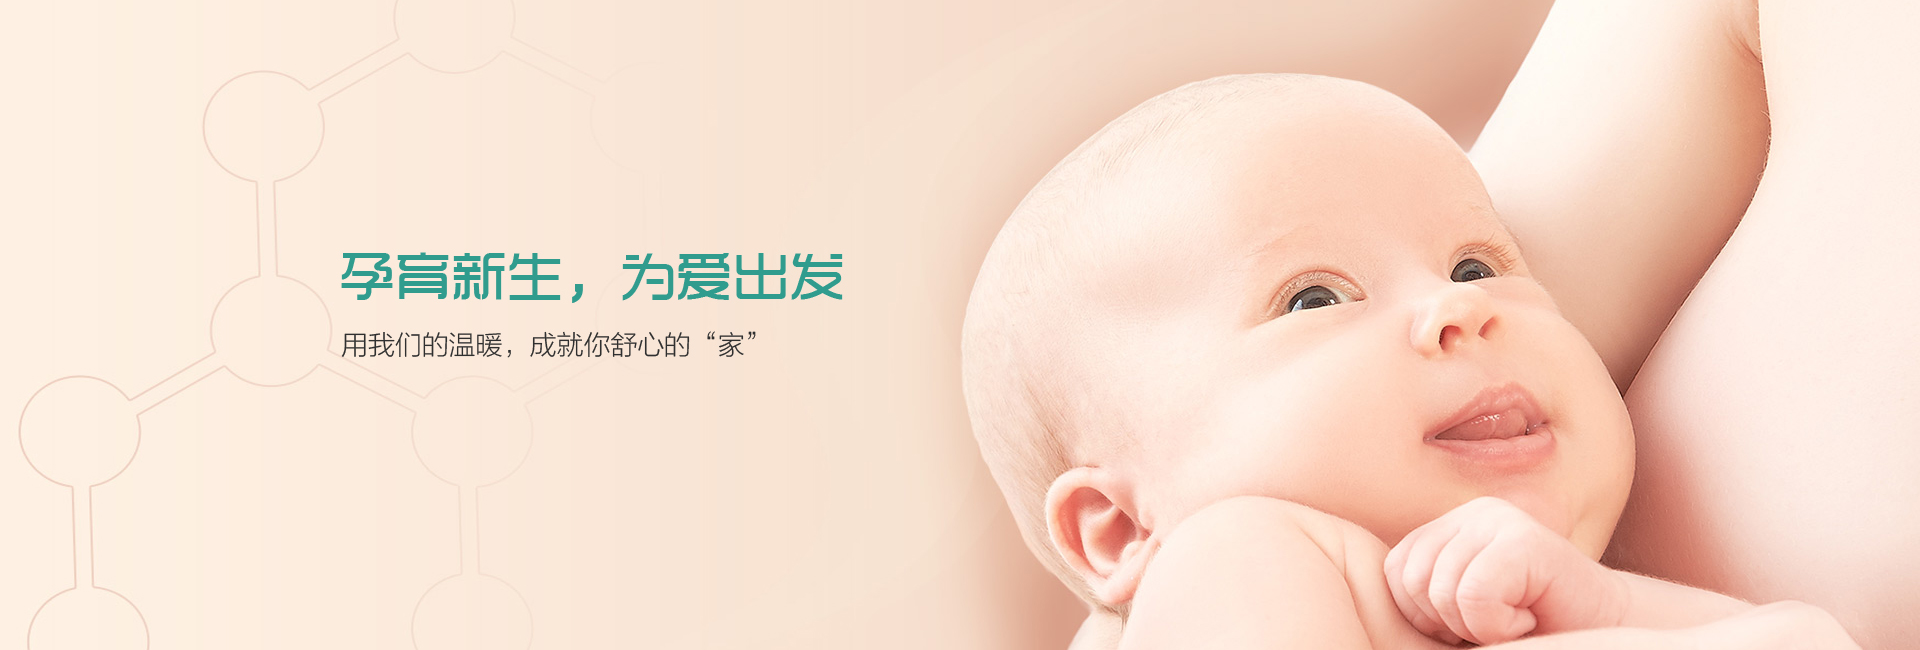 上海代孕-上海代孕机构/上海代孕价格/上海代孕医院/上海借腹生子/上海第三代试管婴儿/上海捐卵代孕/上海代孕生子/上海代